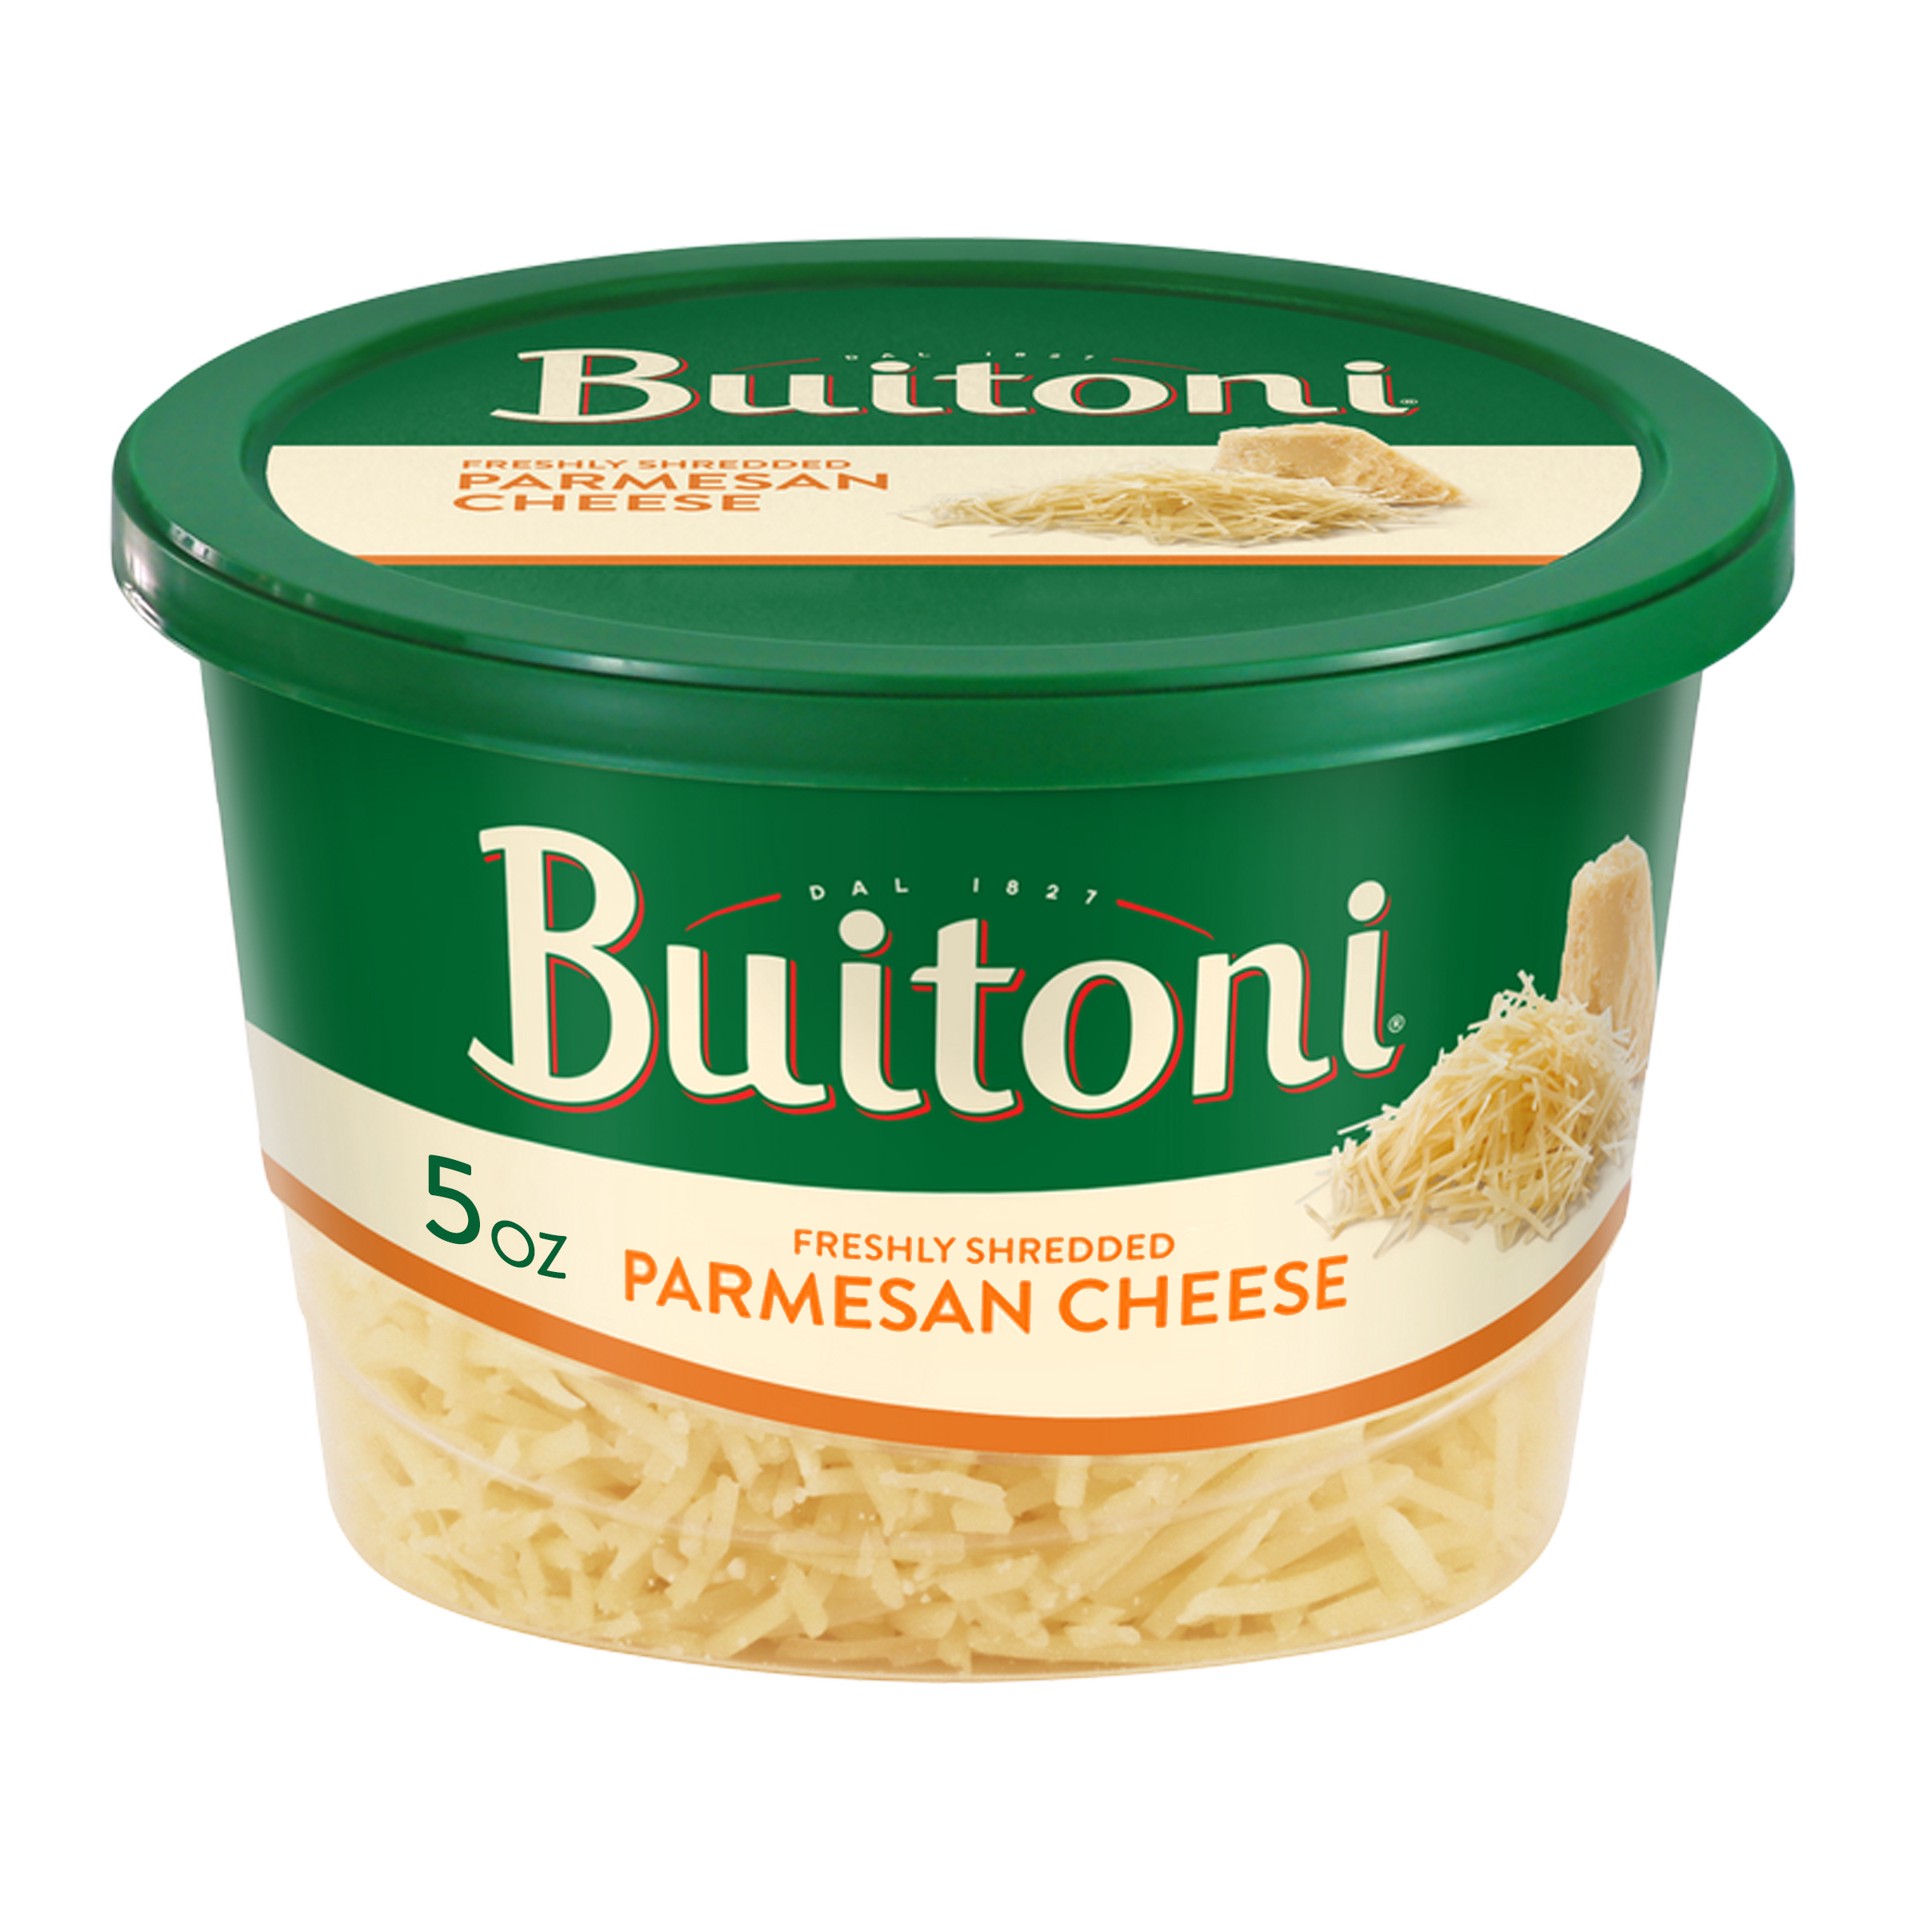 slide 1 of 8, Buitoni Freshly Shredded Parmesan Cheese, 5 oz Tub, 5 oz